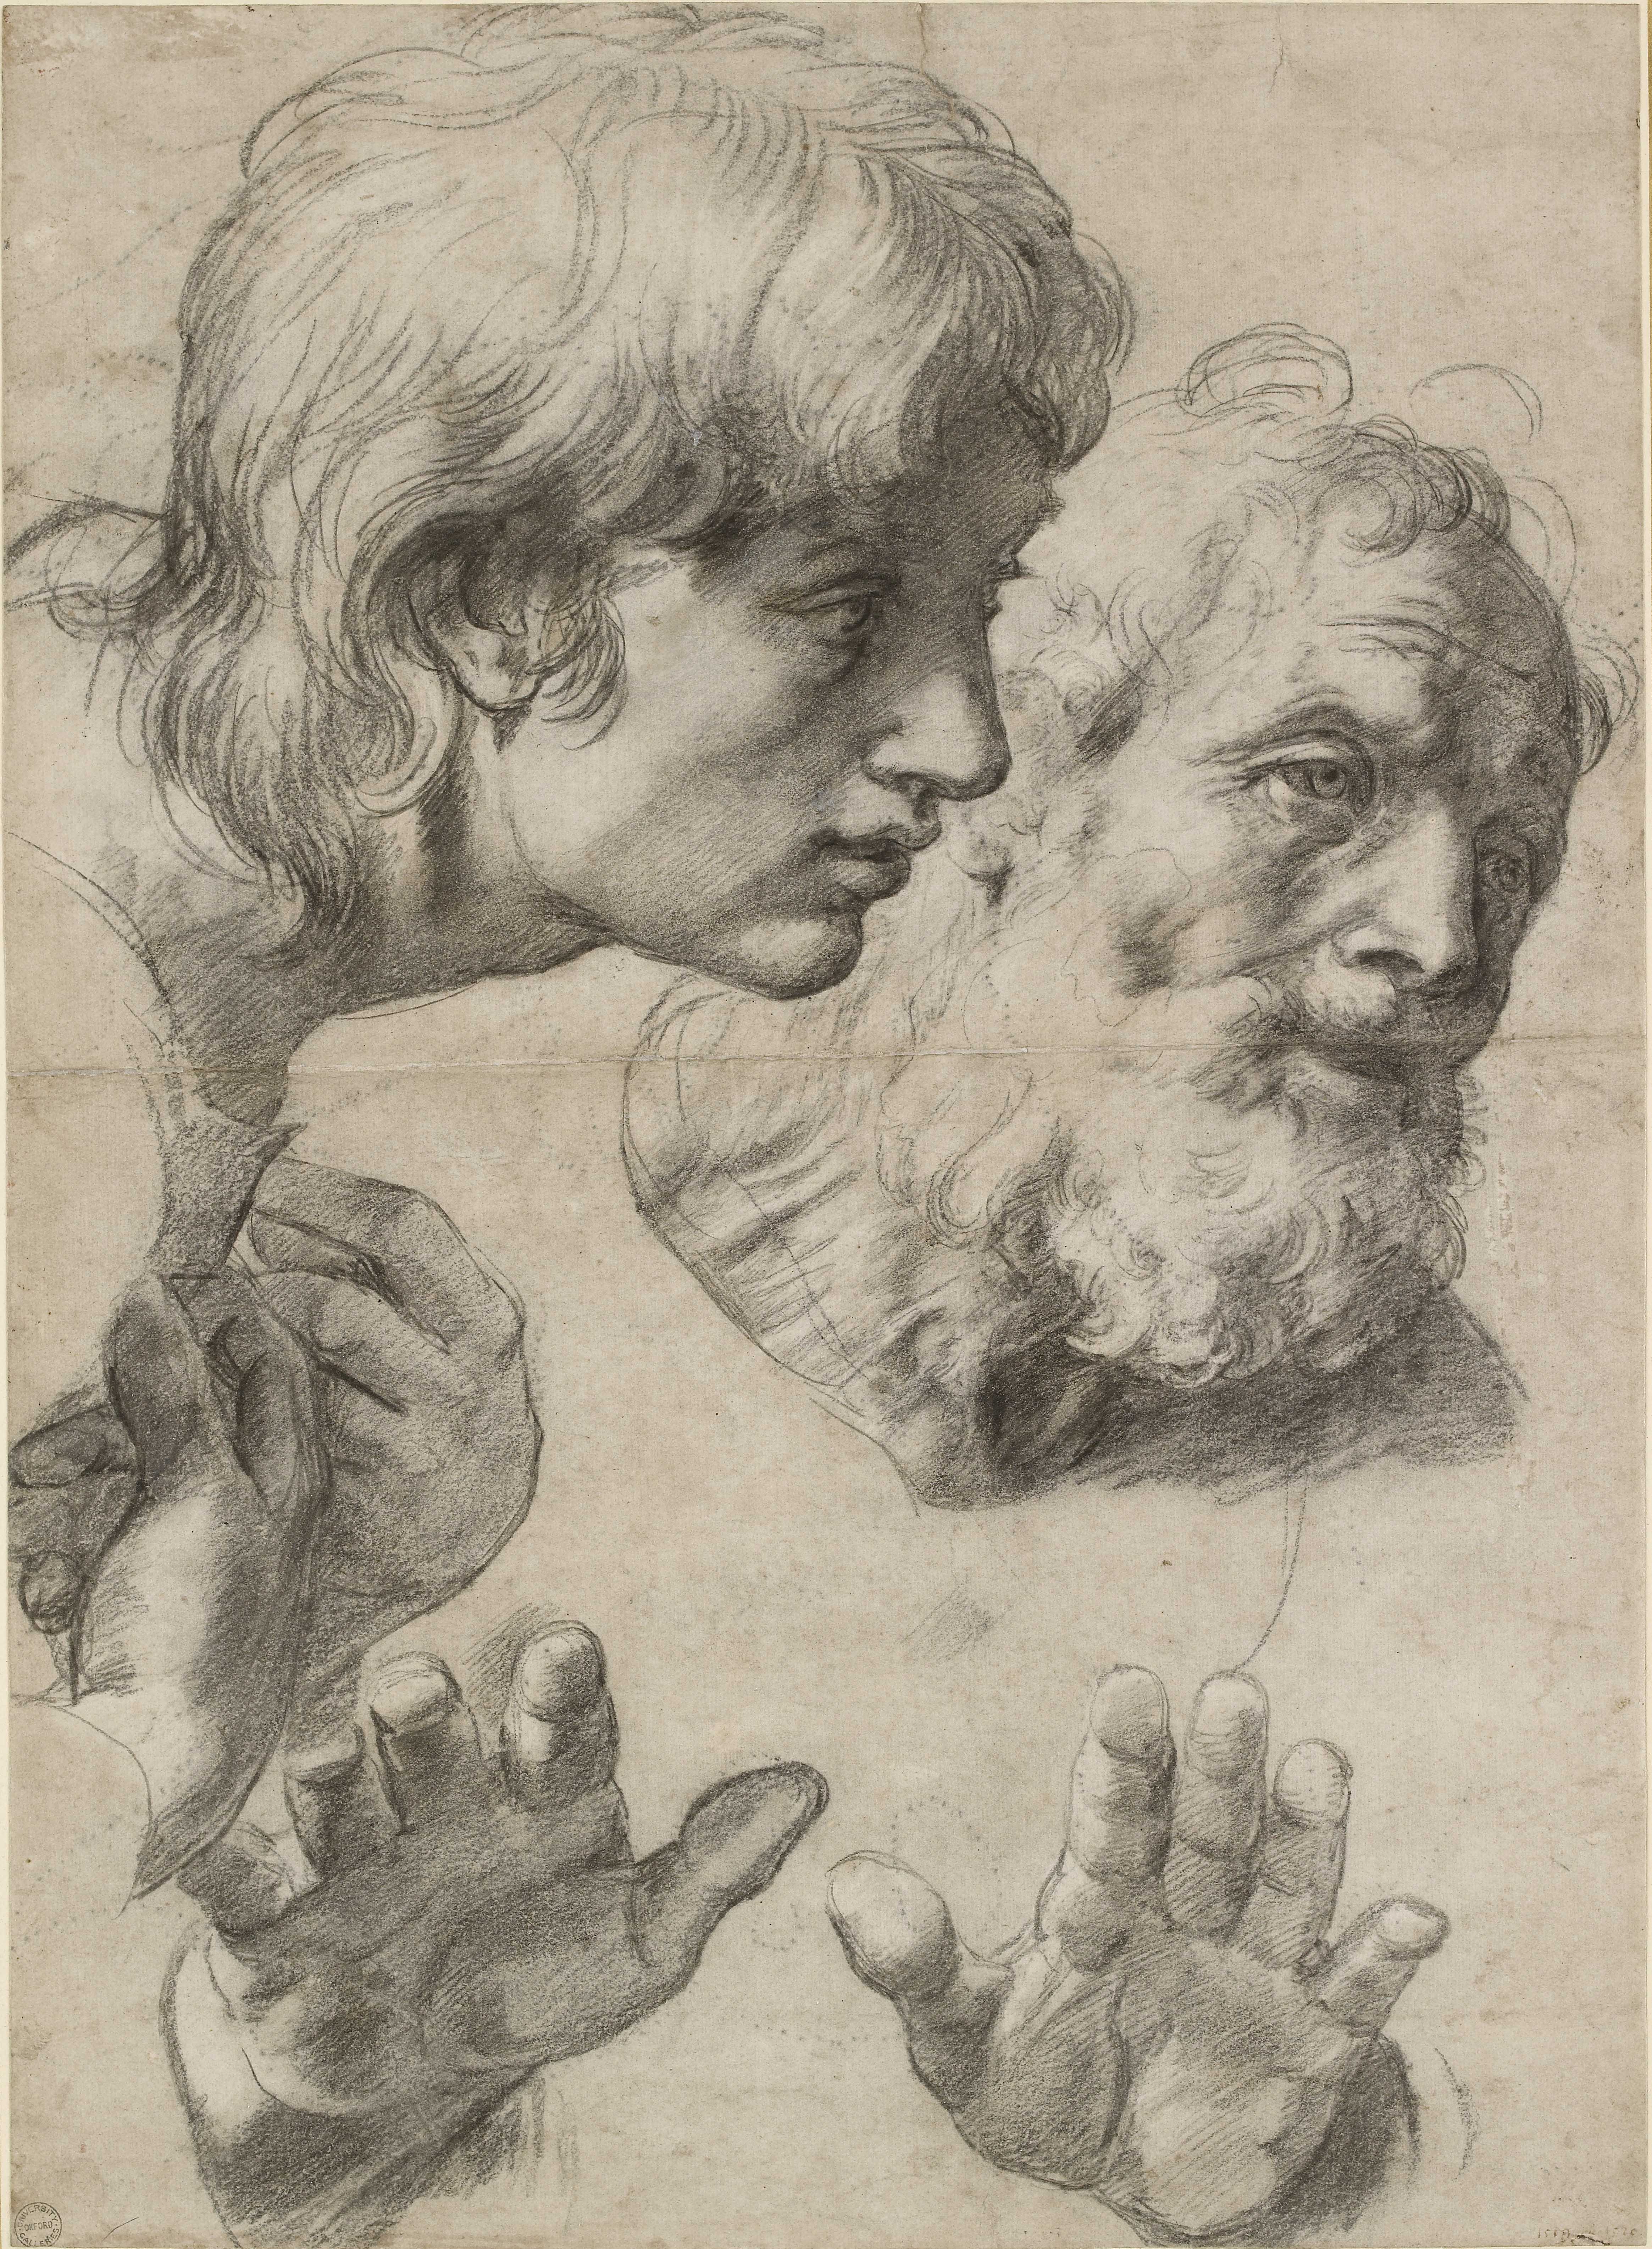 His Paintings, Raphael’s Drawings Reveal His True Genius